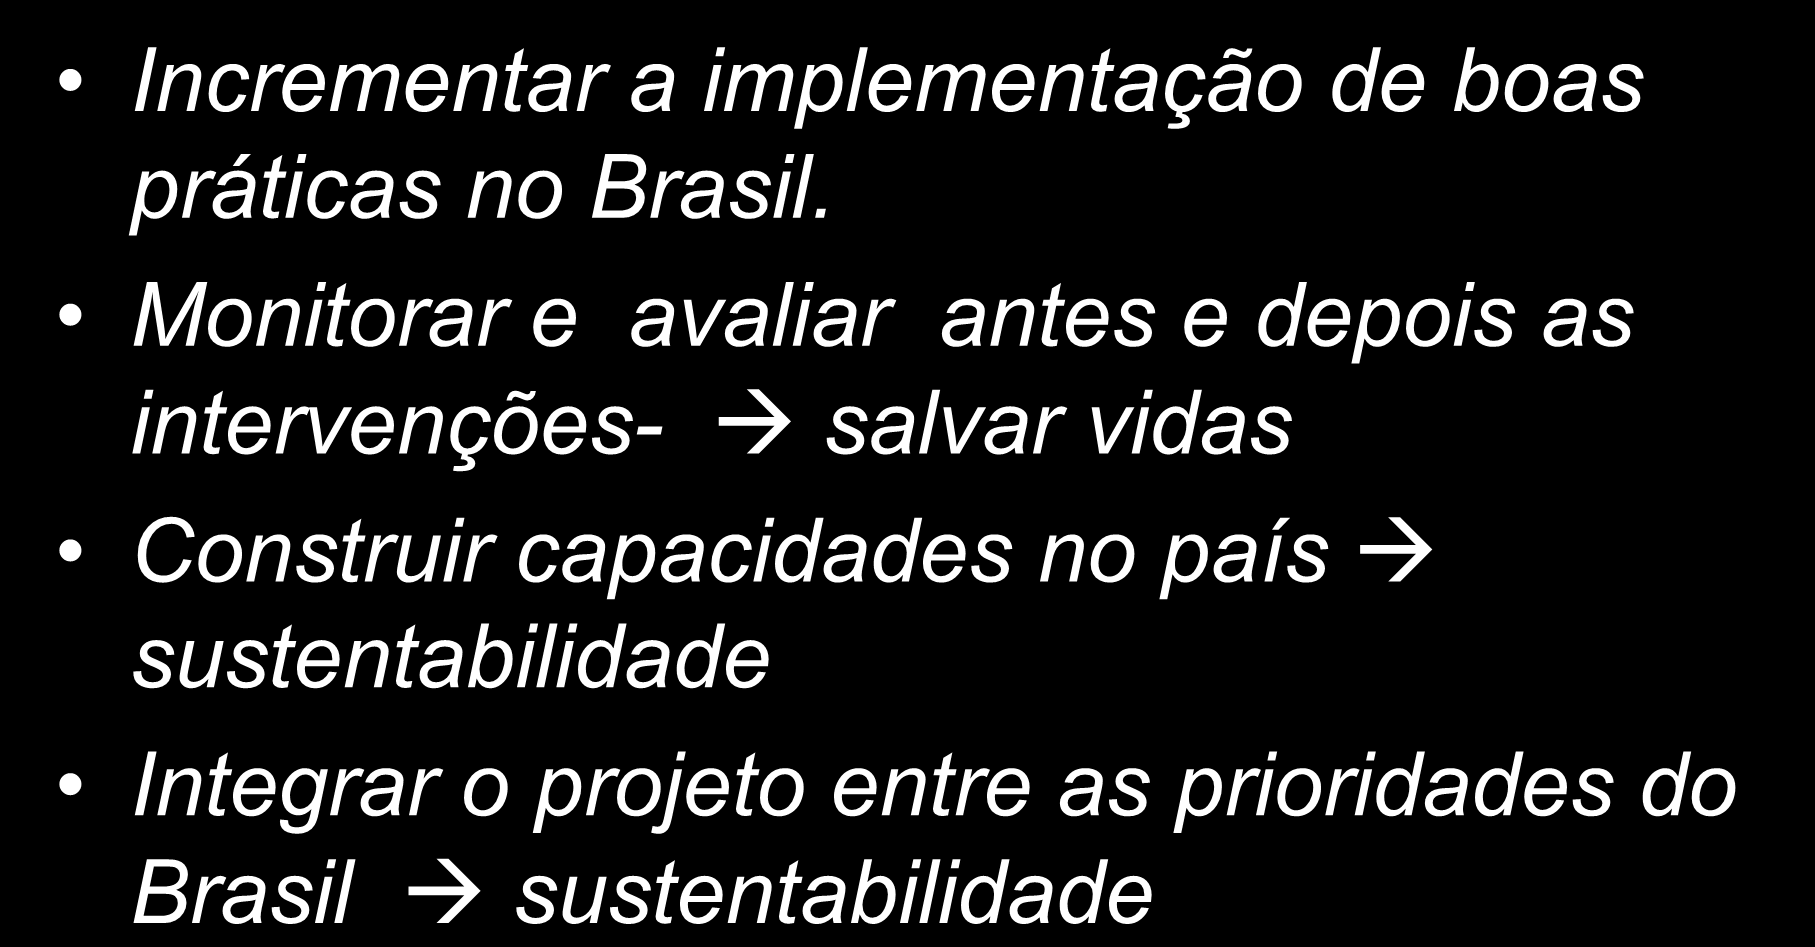 Expectativas para os 05 primeiros anos de projeto Incrementar a implementação de boas práticas no Brasil.